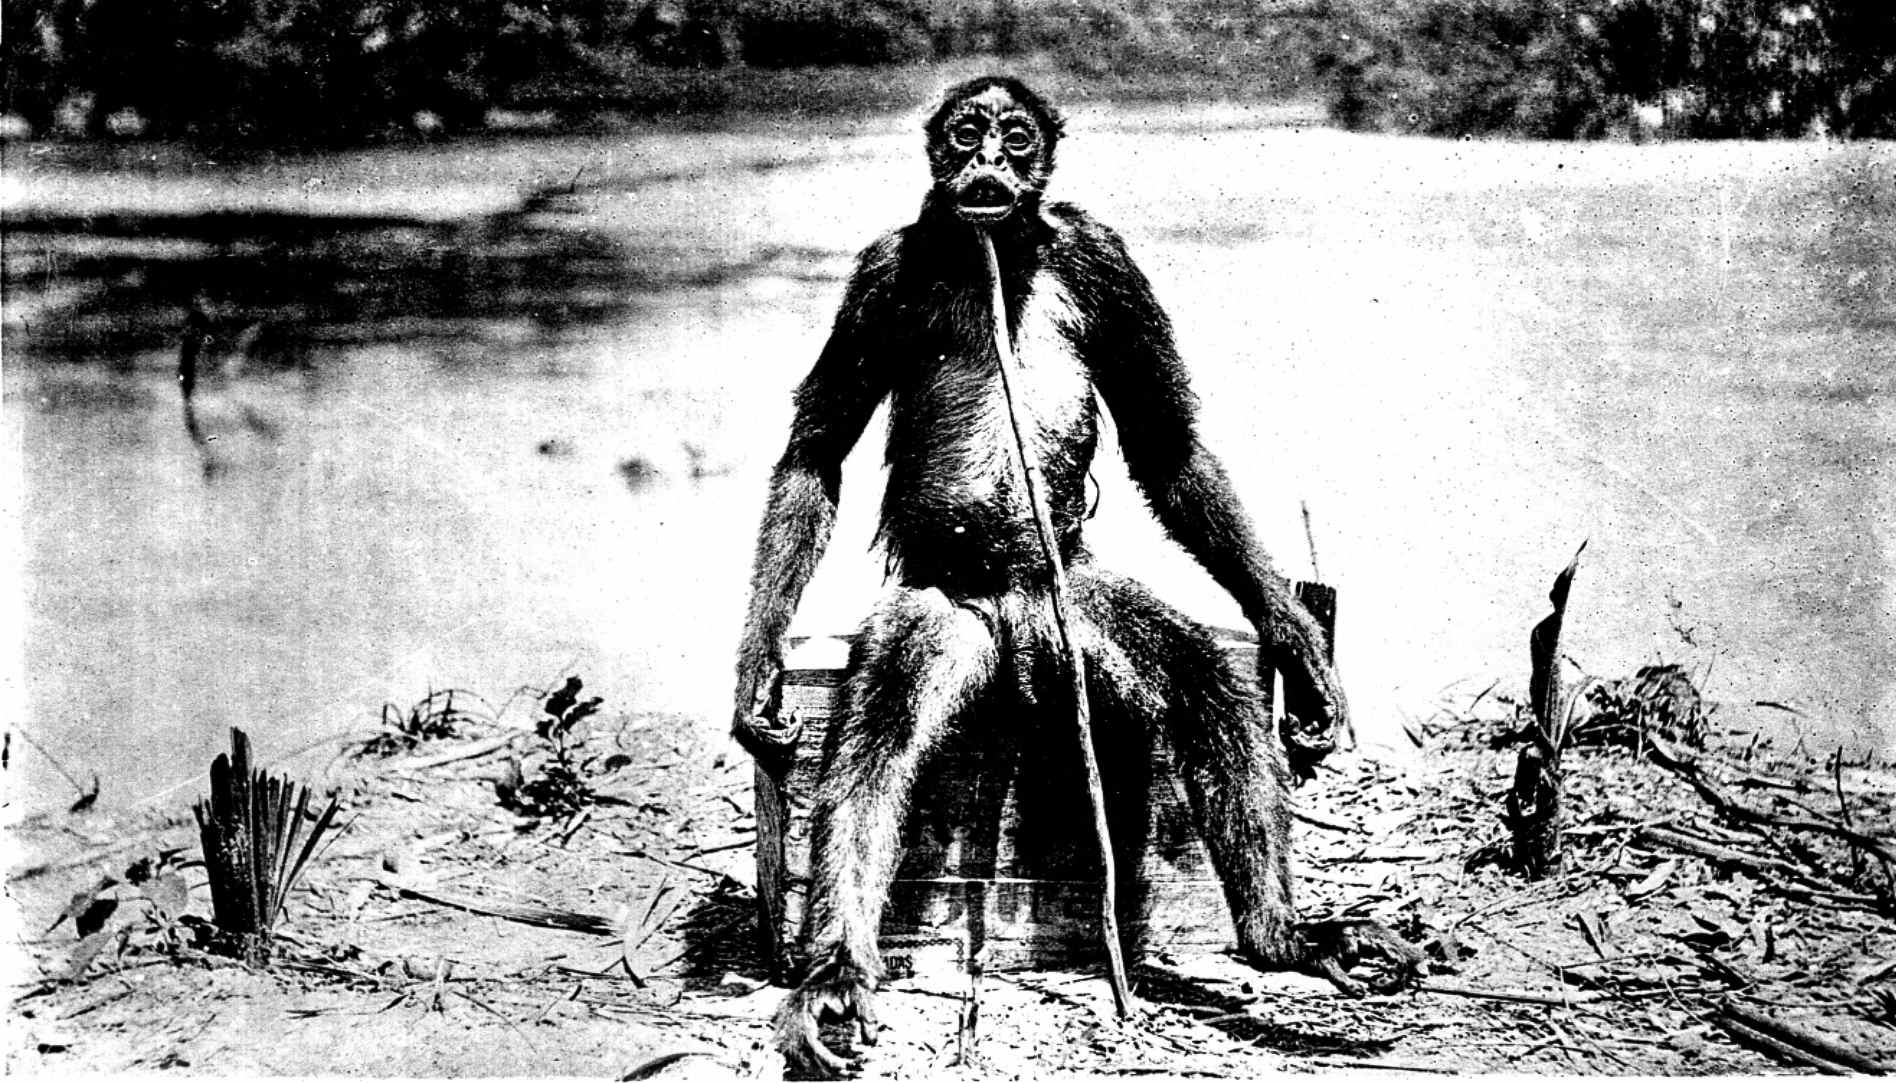 La version rare de la photographie complète du singe de Loys – « Ameranthropoides loysi », de 1929